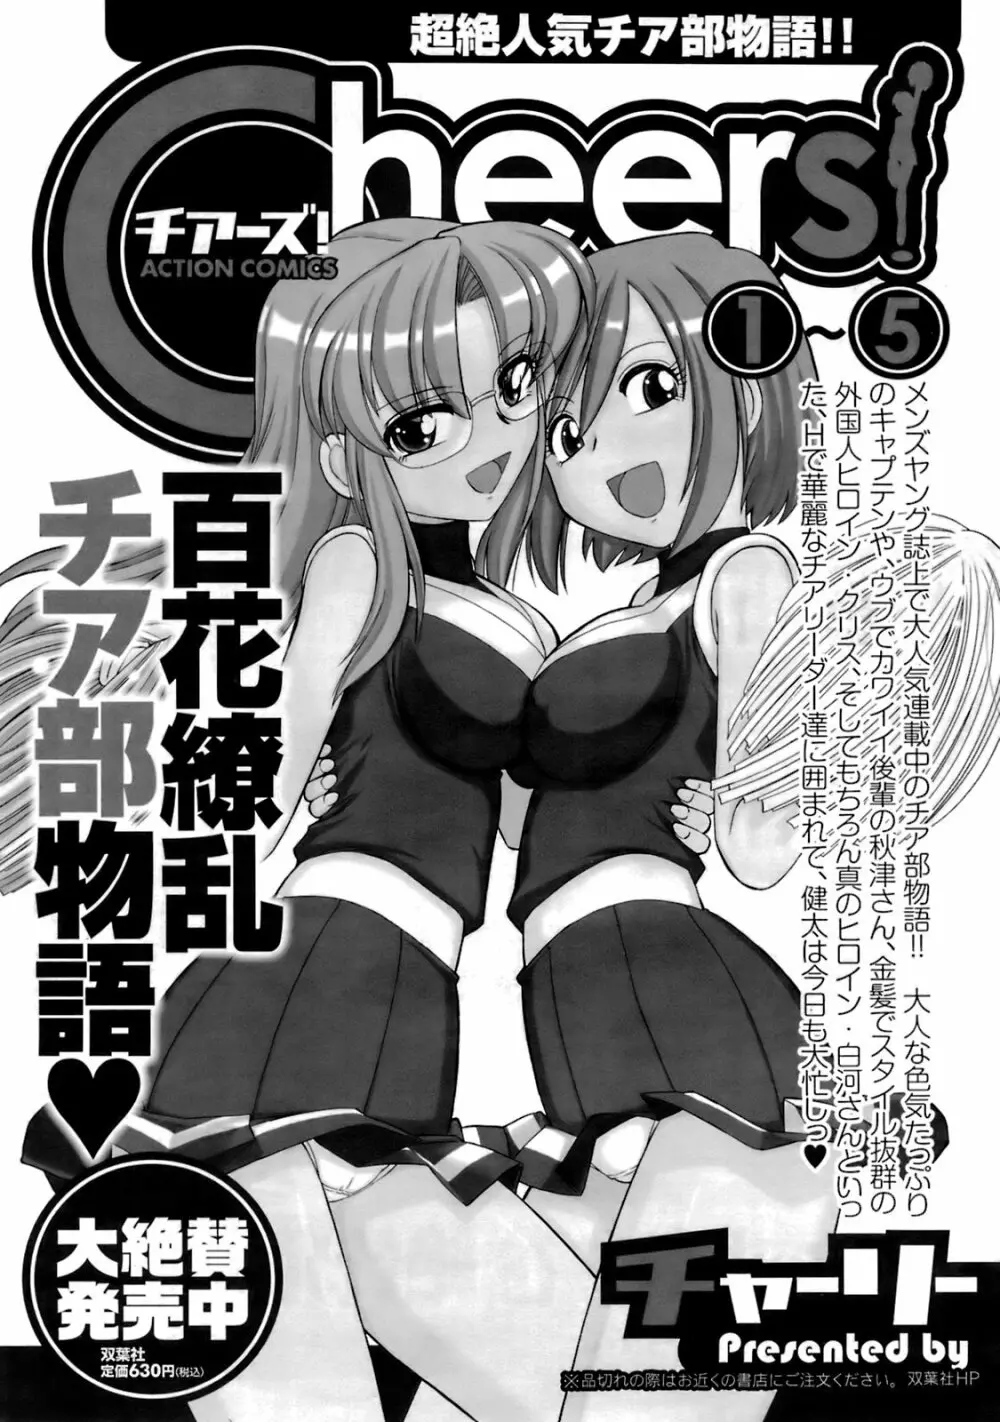 メンズヤングスペシャルIKAZUCHI雷 Vol.6 2008年6月号増刊 32ページ